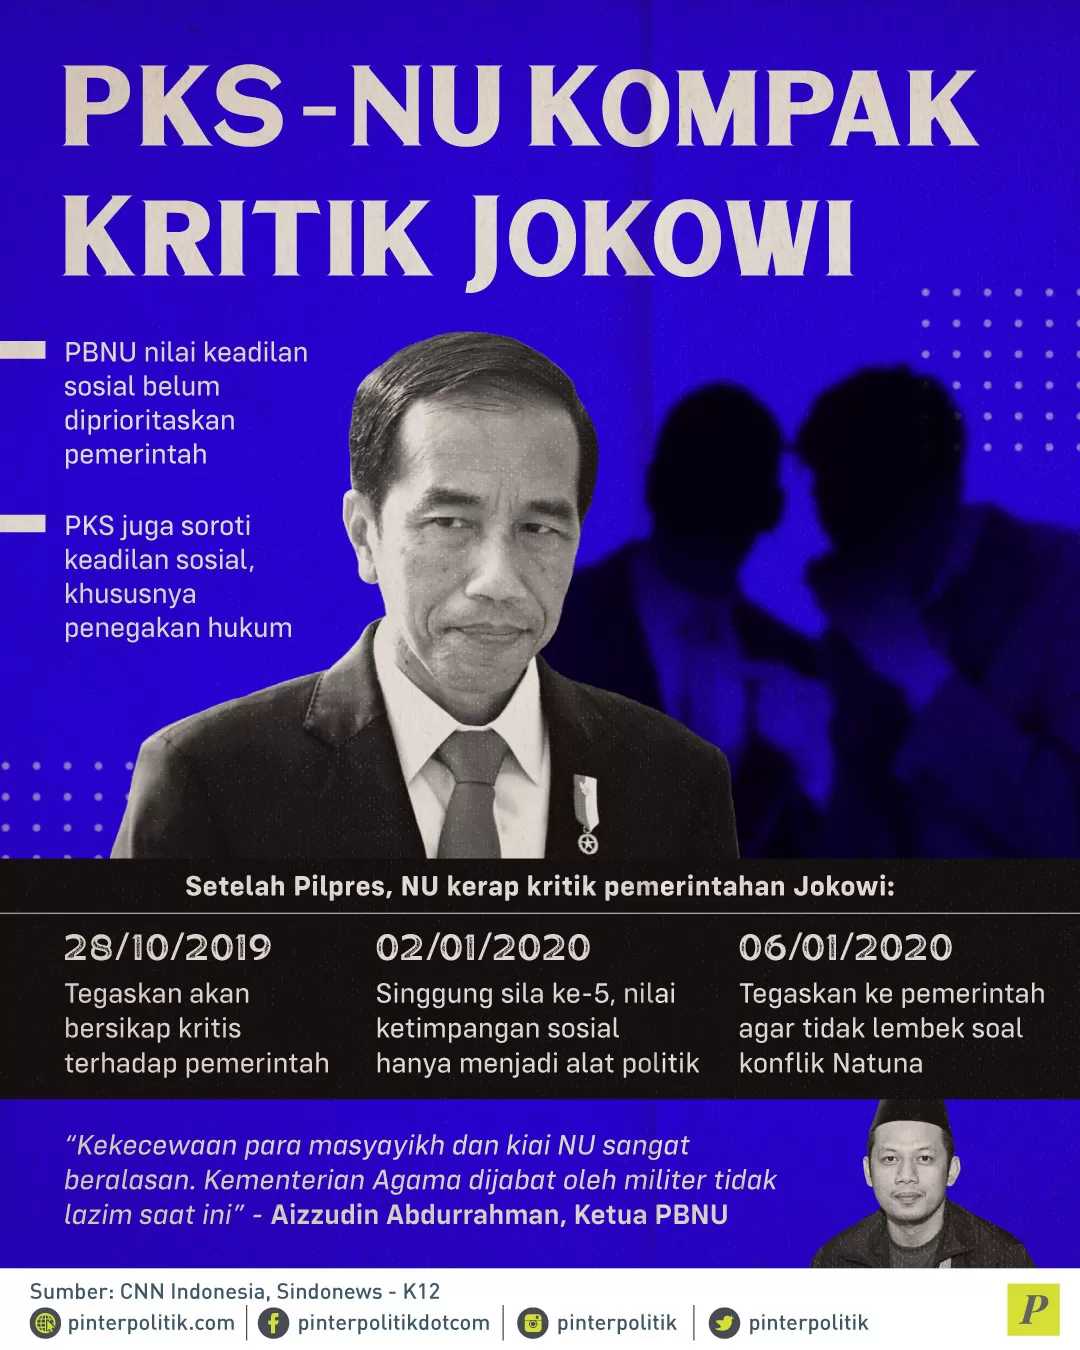 NU kerap kritik pemerintah Jokowi